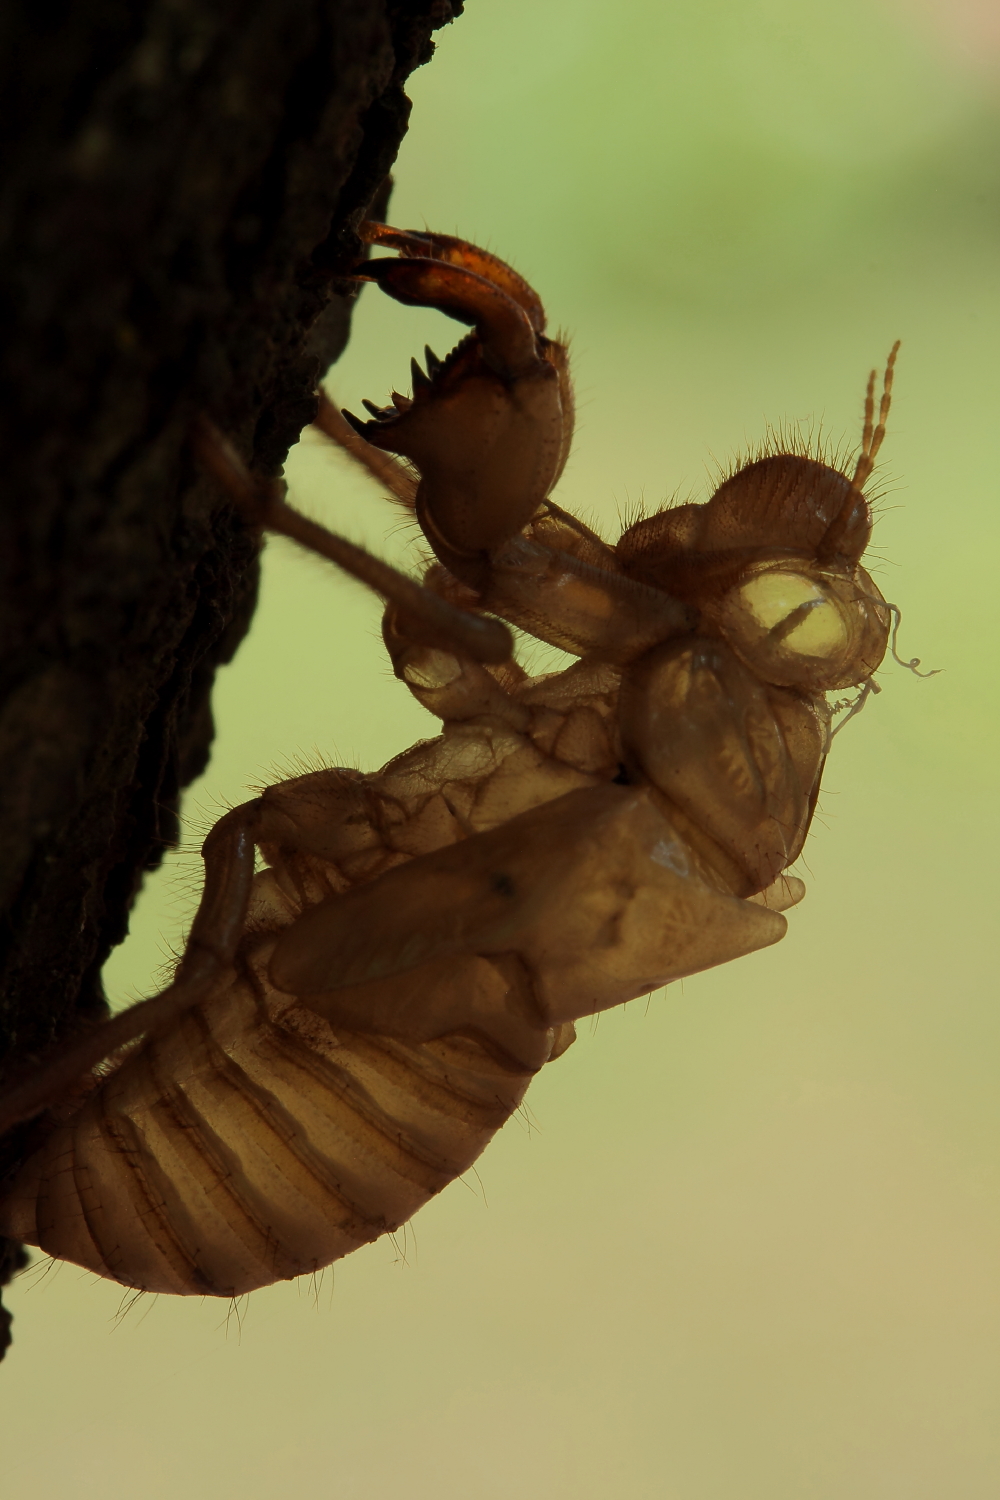 Exoskeleton of cicada...